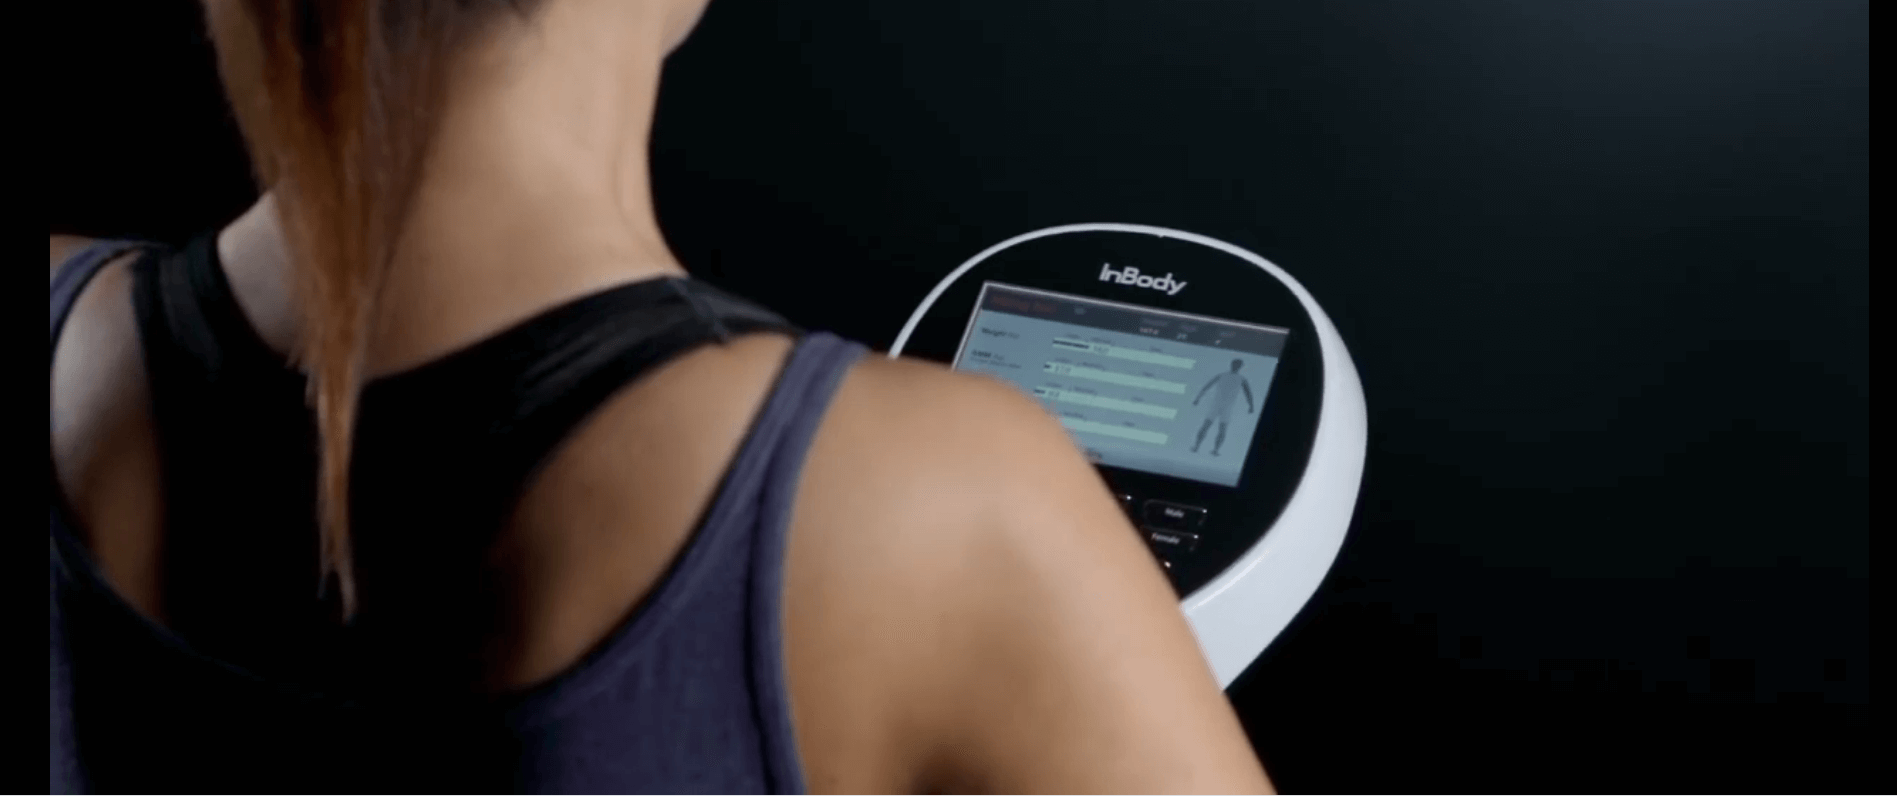 Inbody cung cấp thông tin về thành phần cơ thể (mỡ, cơ, nước), đánh giá sức khỏe toàn diện.